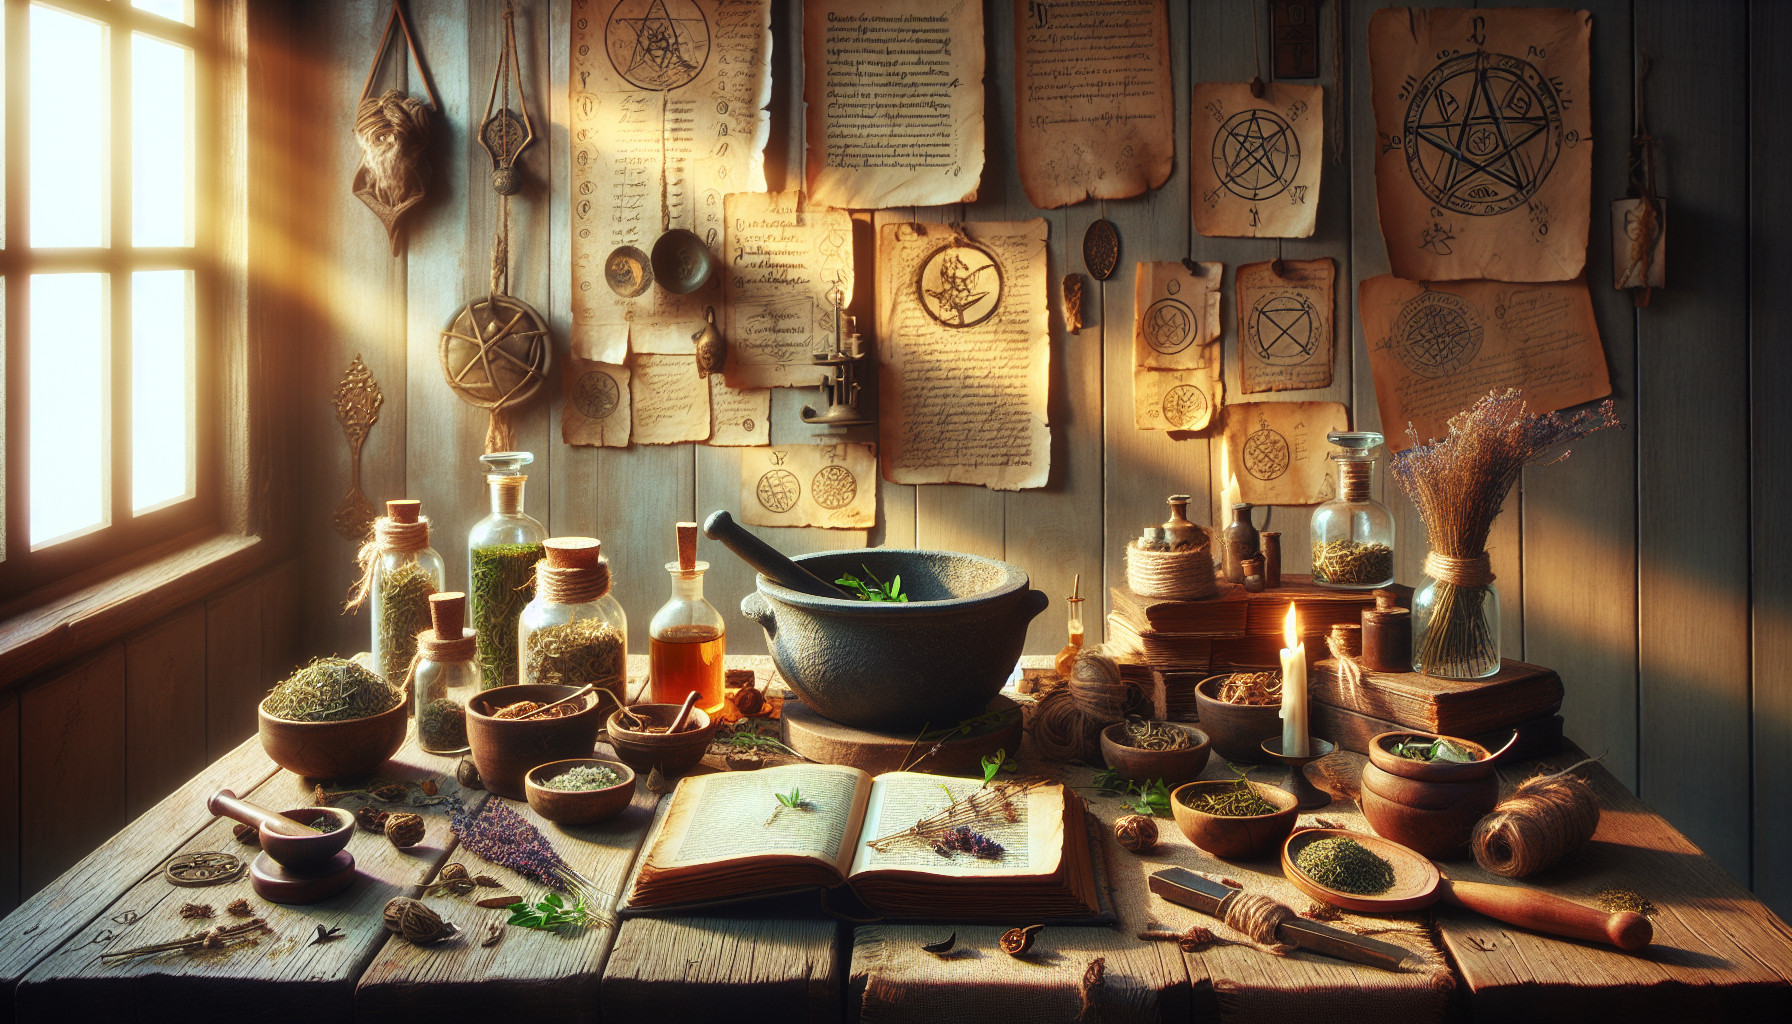 La Magia De Las Hierbas En La Cocina Esotérica: Recetas Y Rituales Culinarios